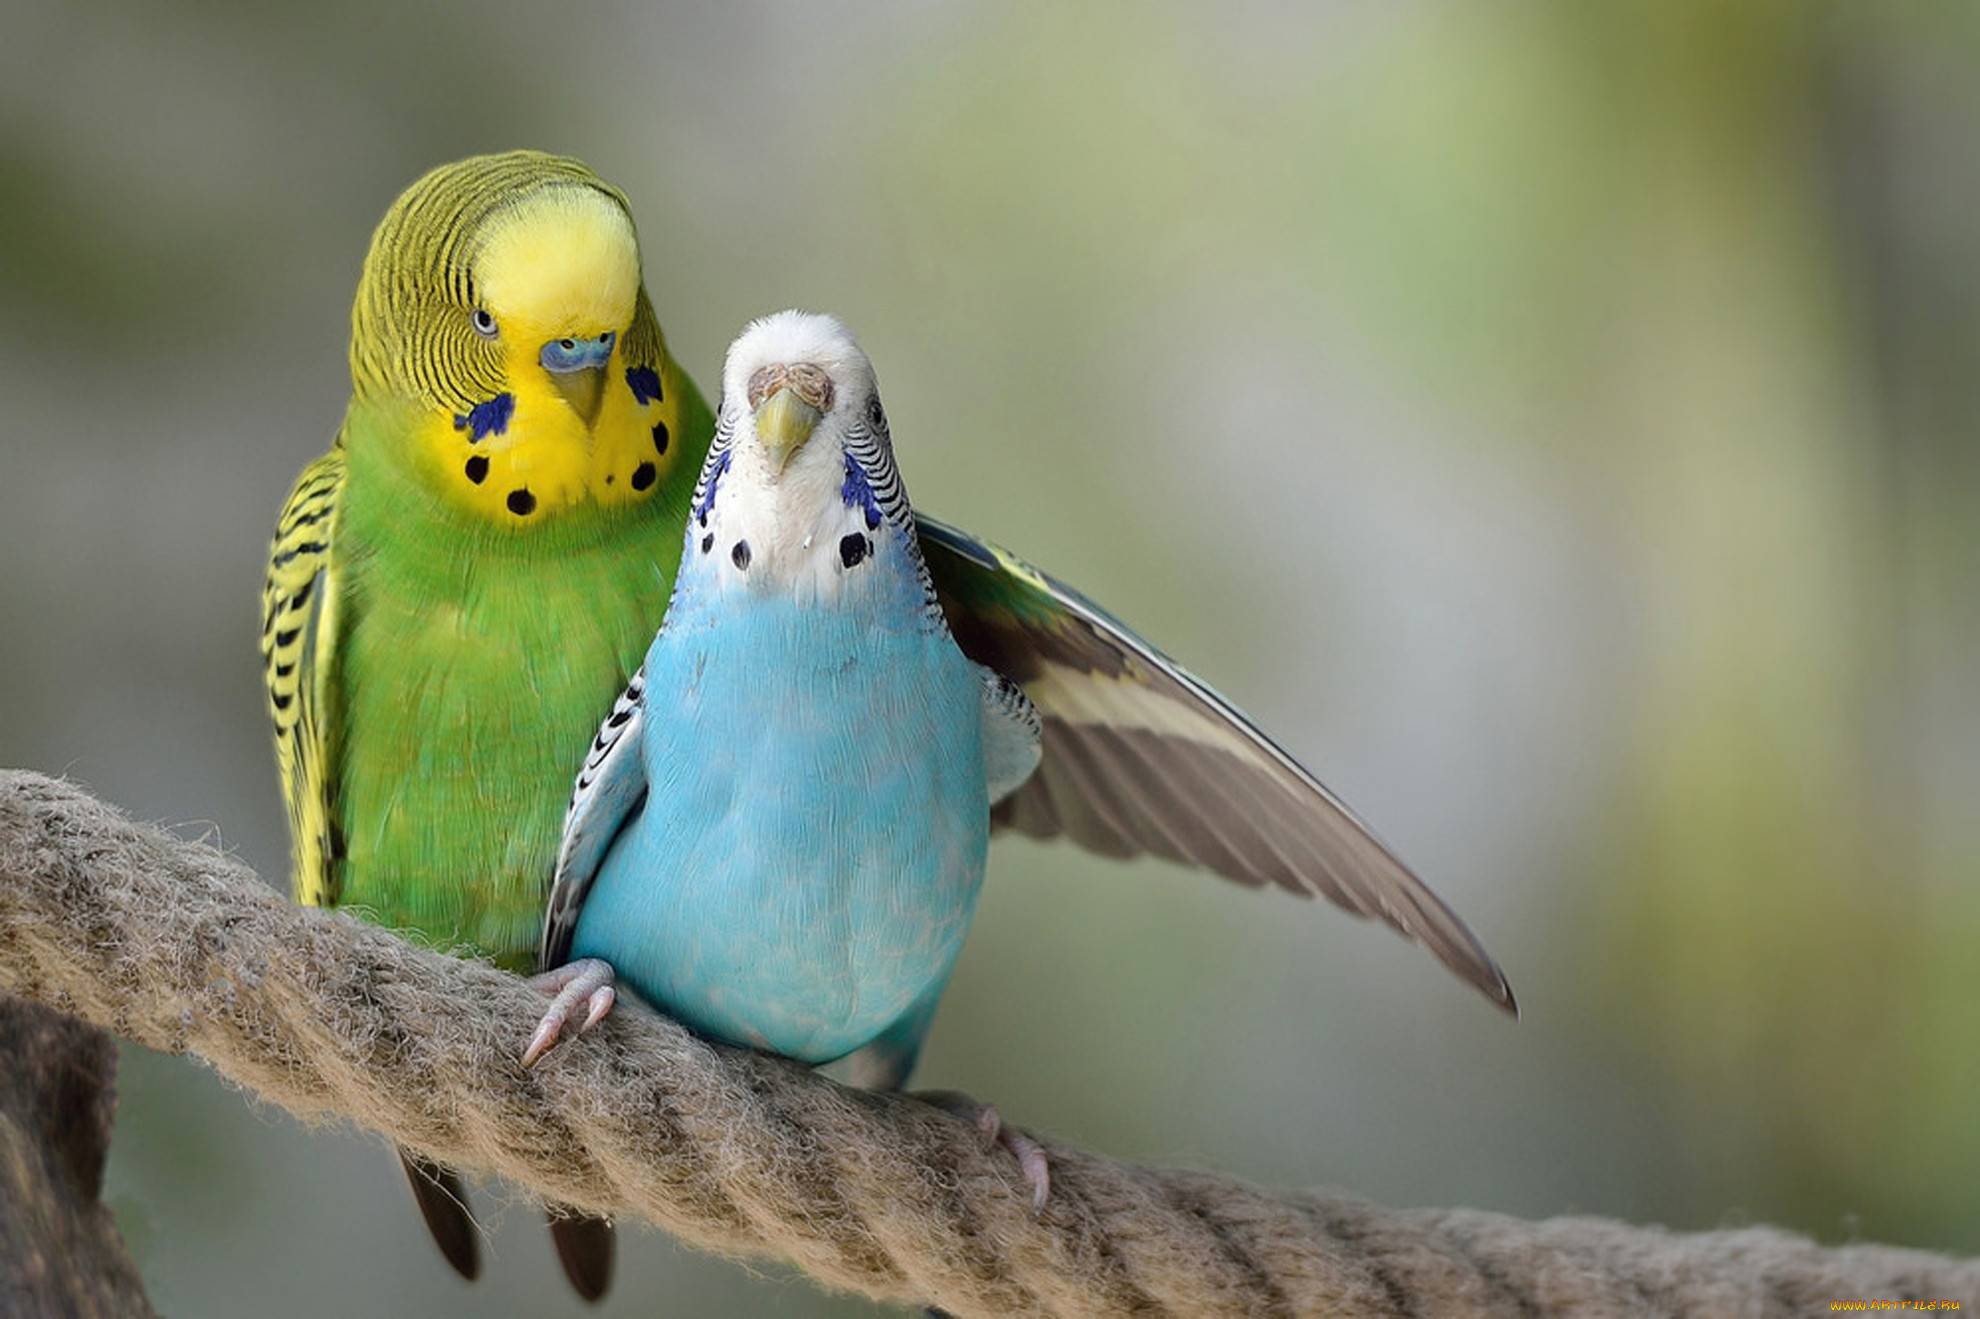 Интимный процесс: спаривание и размножение волнистых попугайчиков дома